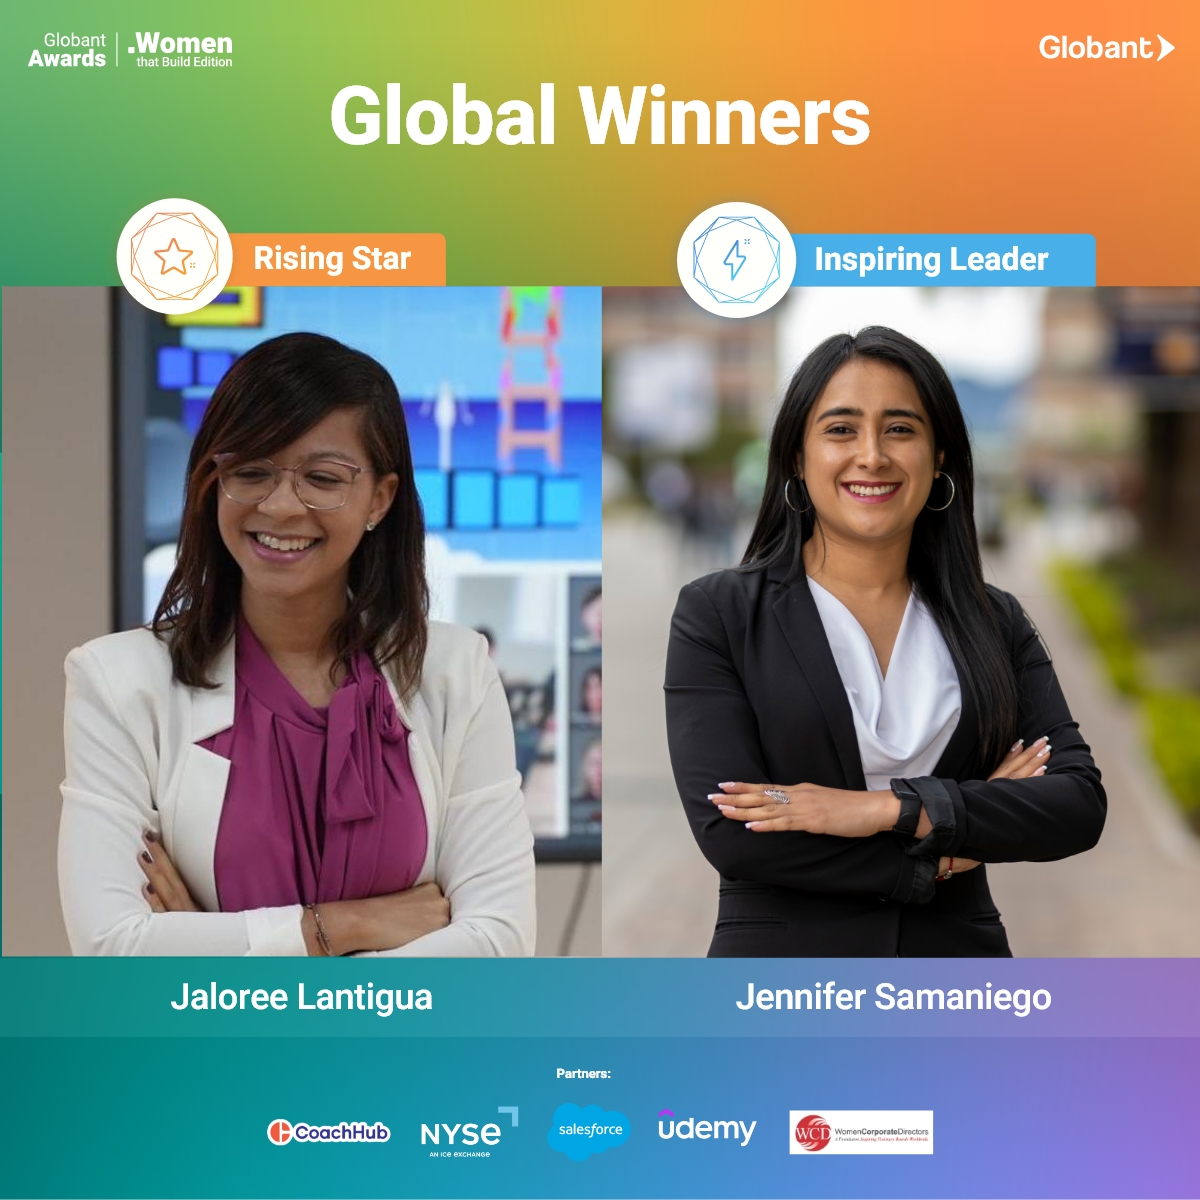 Ayer concluyó la edición con más participación en la historia de los #WomenThatBuildAwards que creamos desde @Globant. Jennifer Samaniego 🇪🇨 y Jaloree Lantigua 🇺🇸 fueron premiadas entre 25 ganadoras locales de 12 regiones.